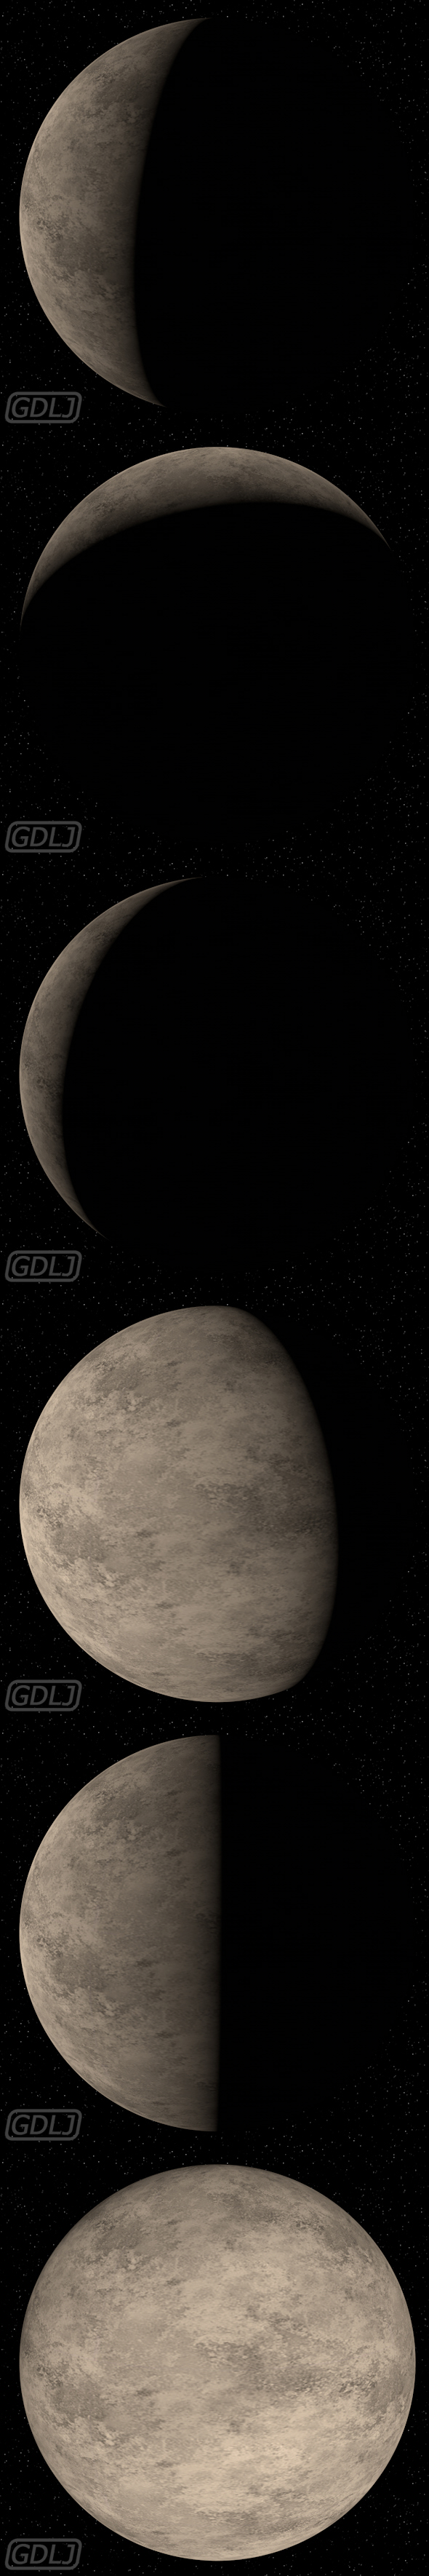 The moon 3D - 3Docean 21737532